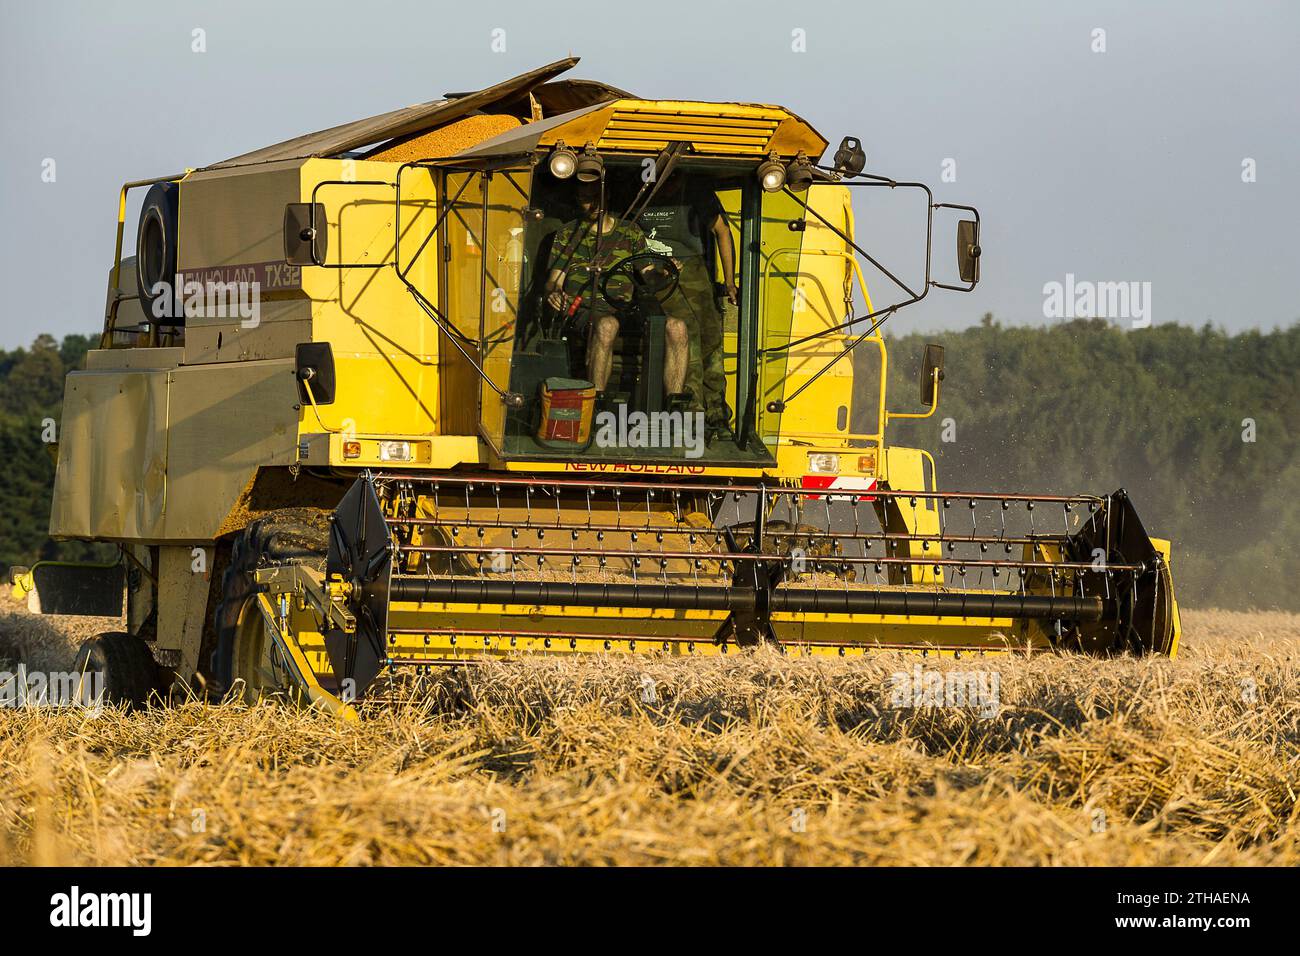 Gli agricoltori approfittano di qualche giorno senza pioggia per raccogliere i loro campi. I semi vengono versati direttamente in un camion. La mietitrebbia assicura un processo Foto Stock